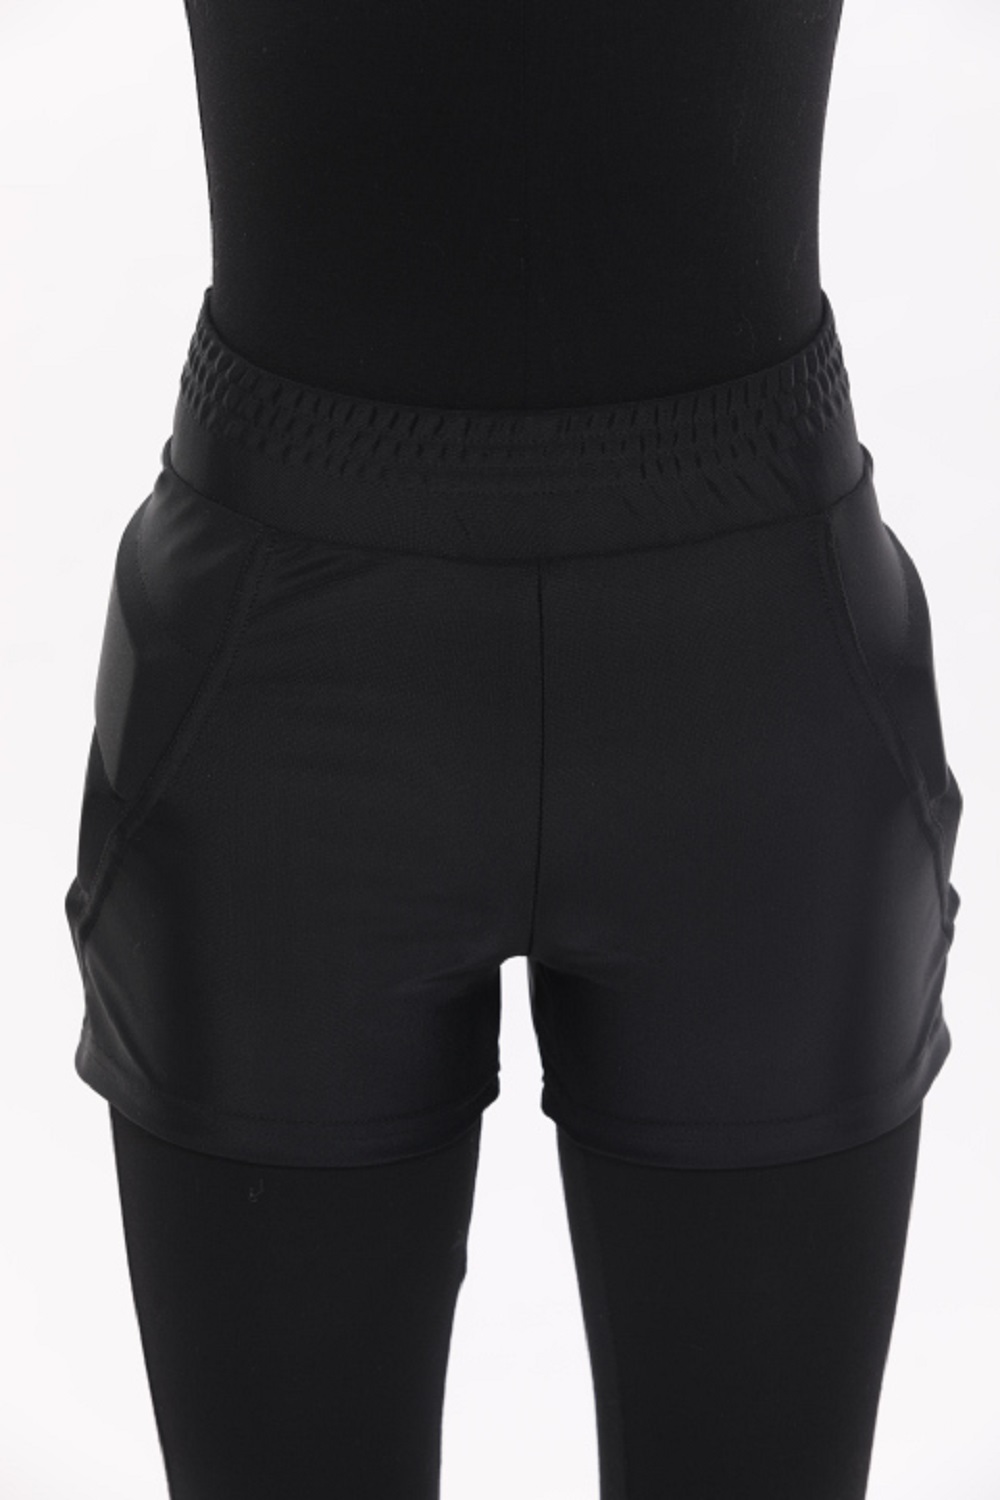 Защитные шорты усиленные для фигурного катания и роликов Chersa, цвет: черные 110-116